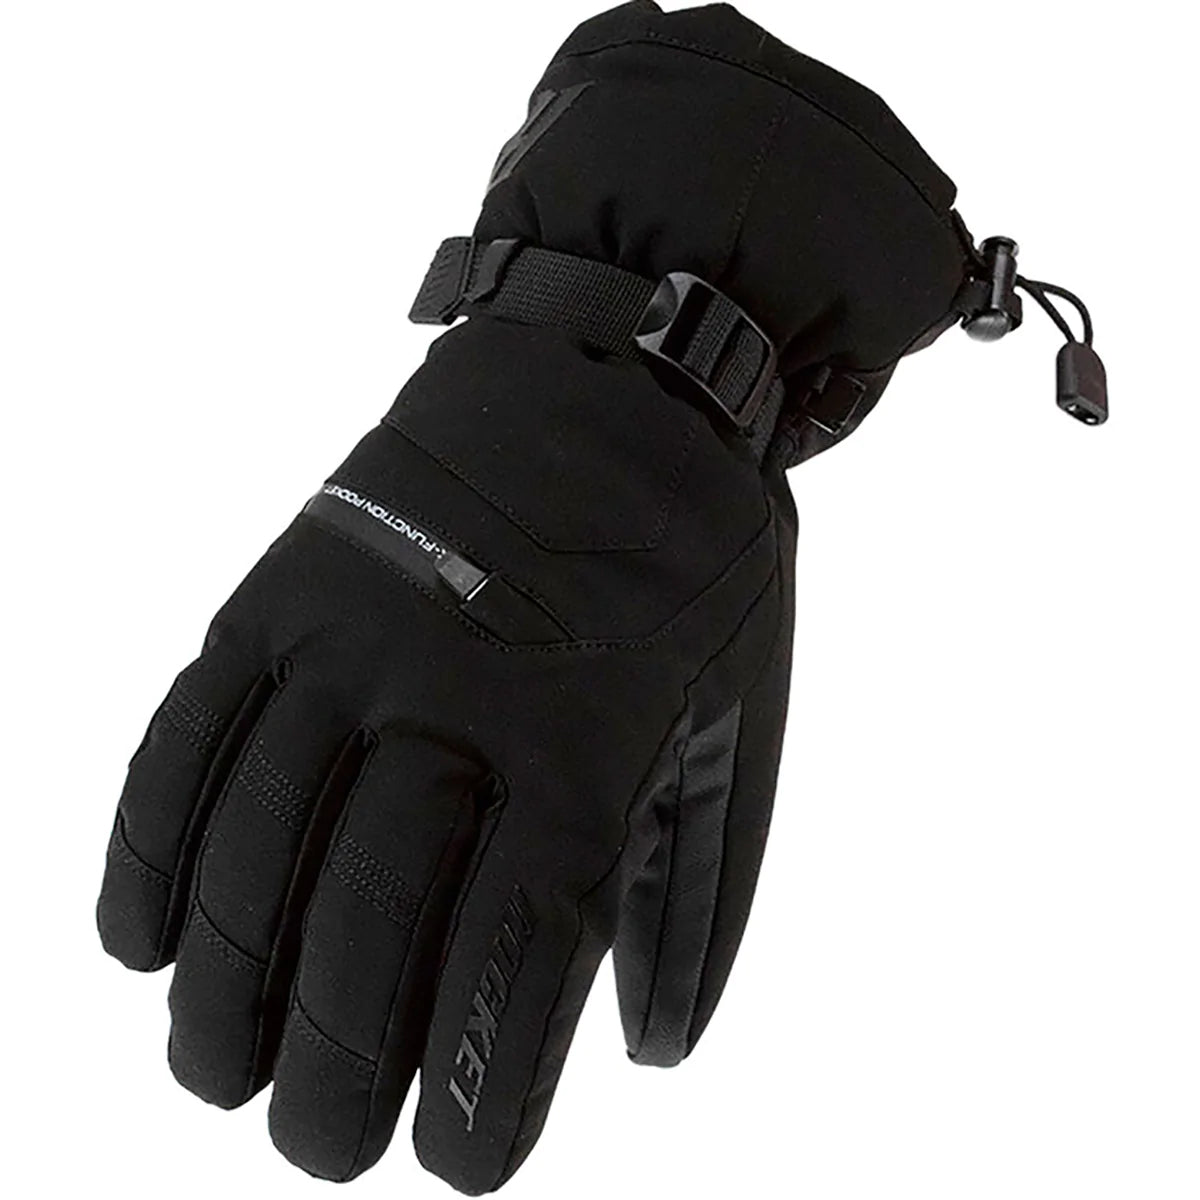 Joe Rocket Full Blast Men's Street Gloves